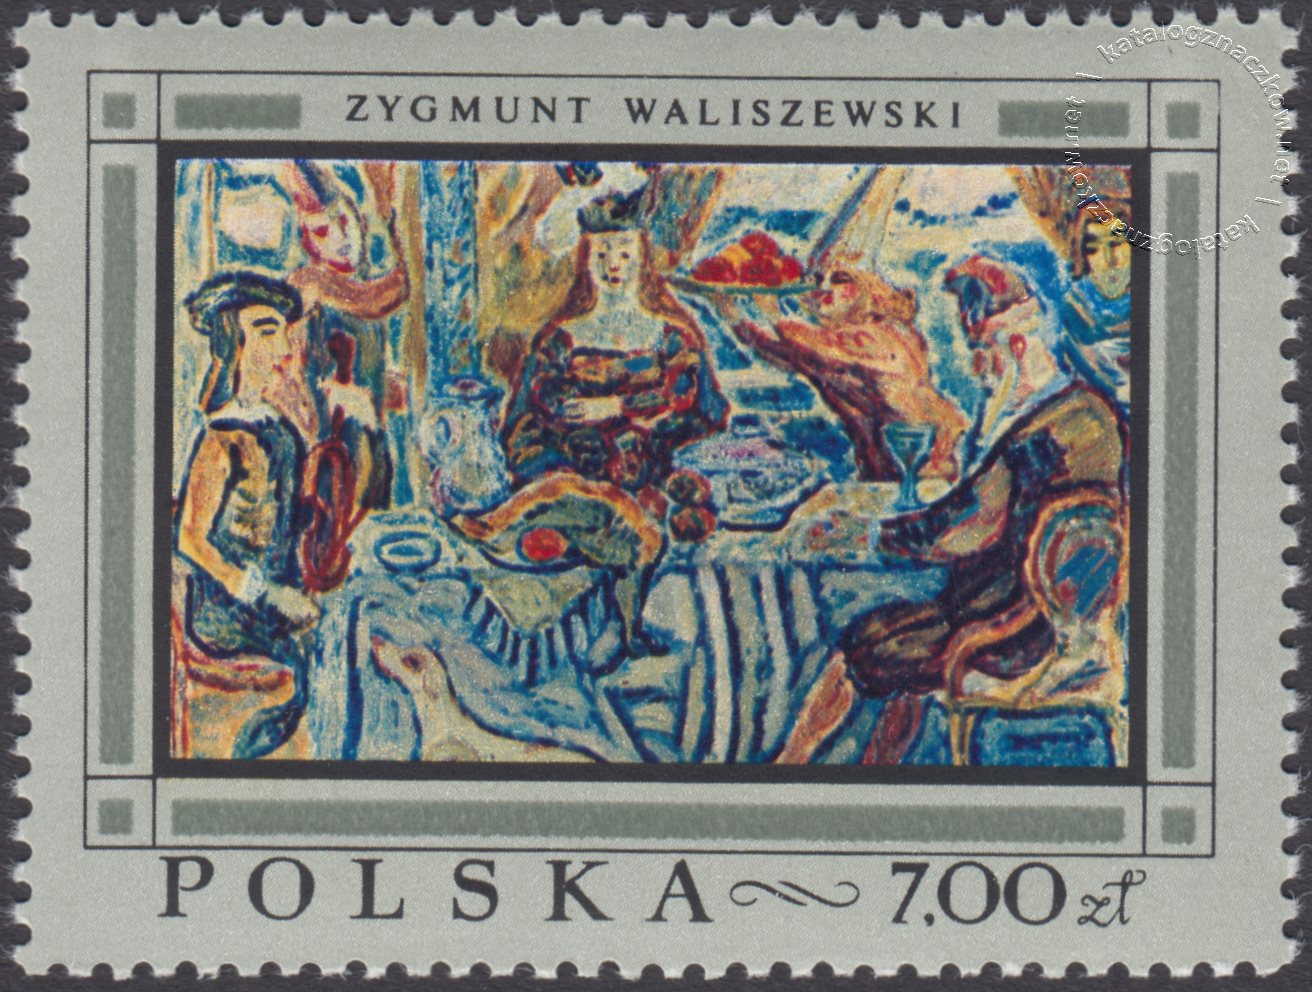 Malarstwo polskie znaczek nr 1724